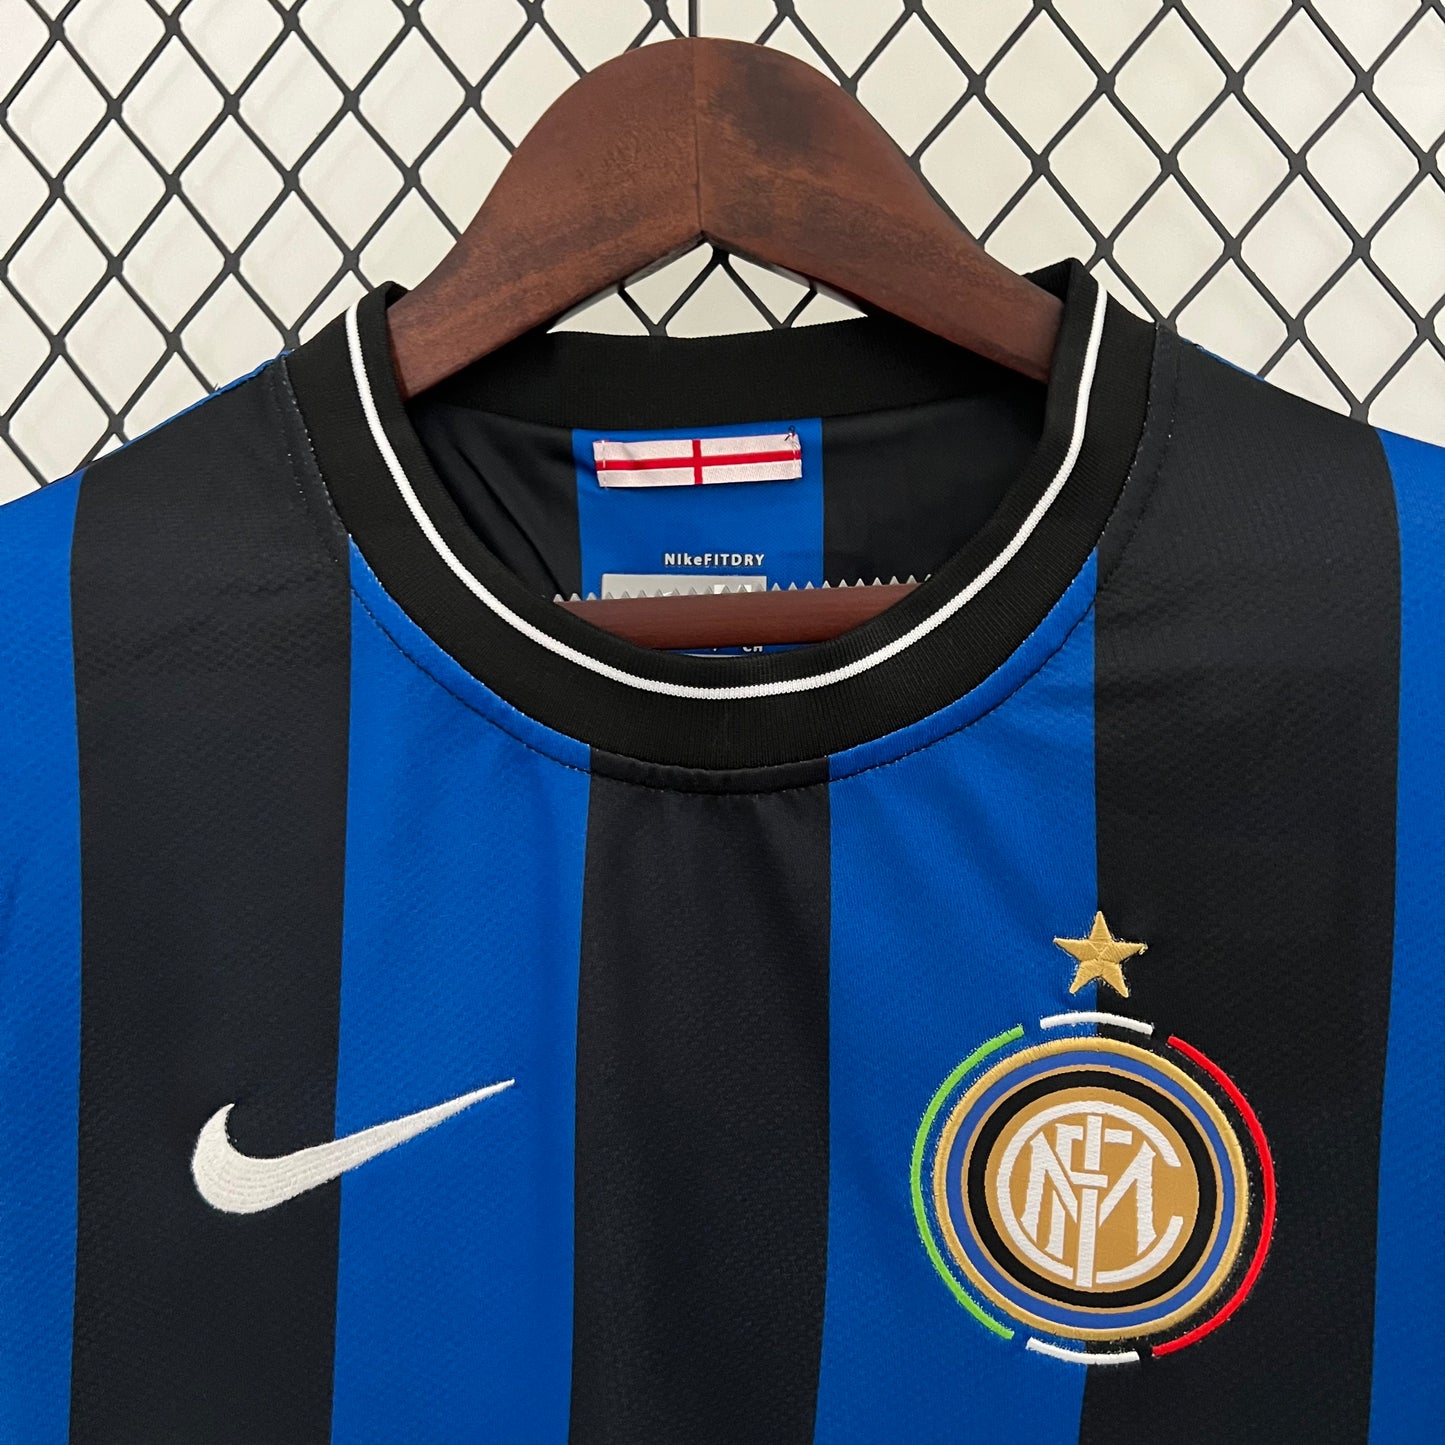 Retro Inter Milan 09/10 Home Kit